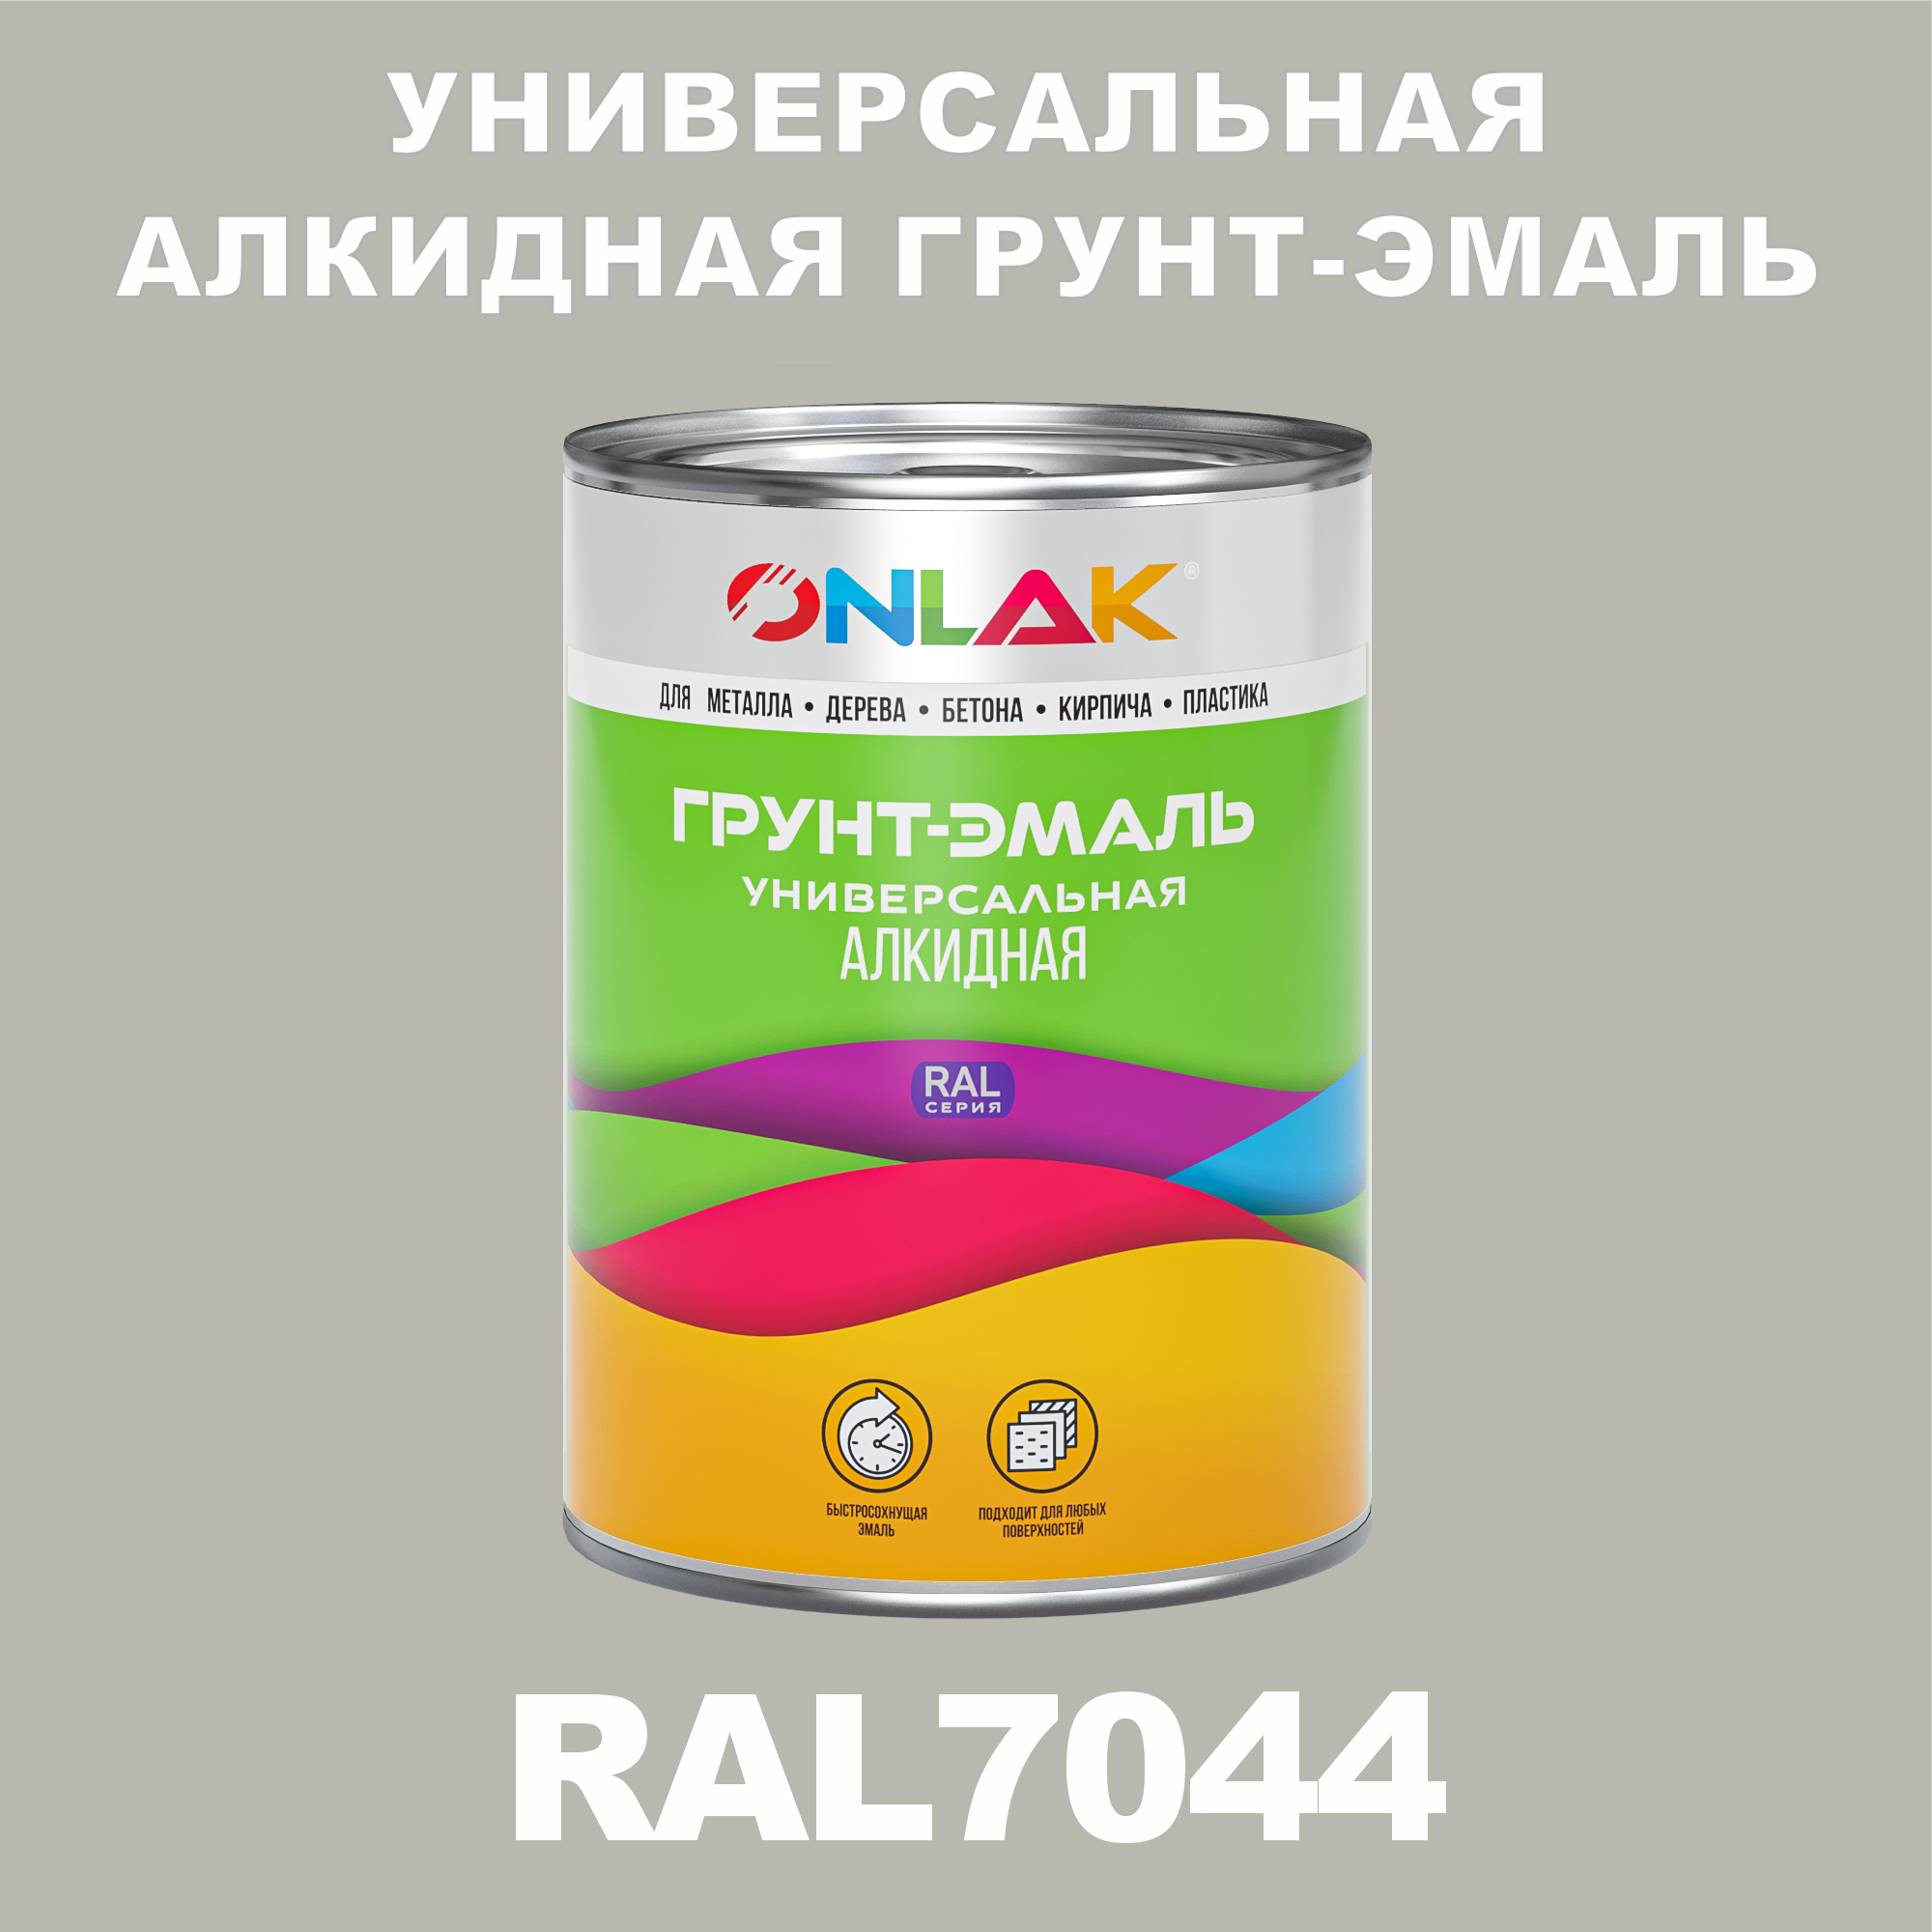 Грунт-эмаль ONLAK 1К RAL7044 антикоррозионная алкидная по металлу по ржавчине 1 кг грунт эмаль yollo по ржавчине алкидная зеленая 0 9 кг